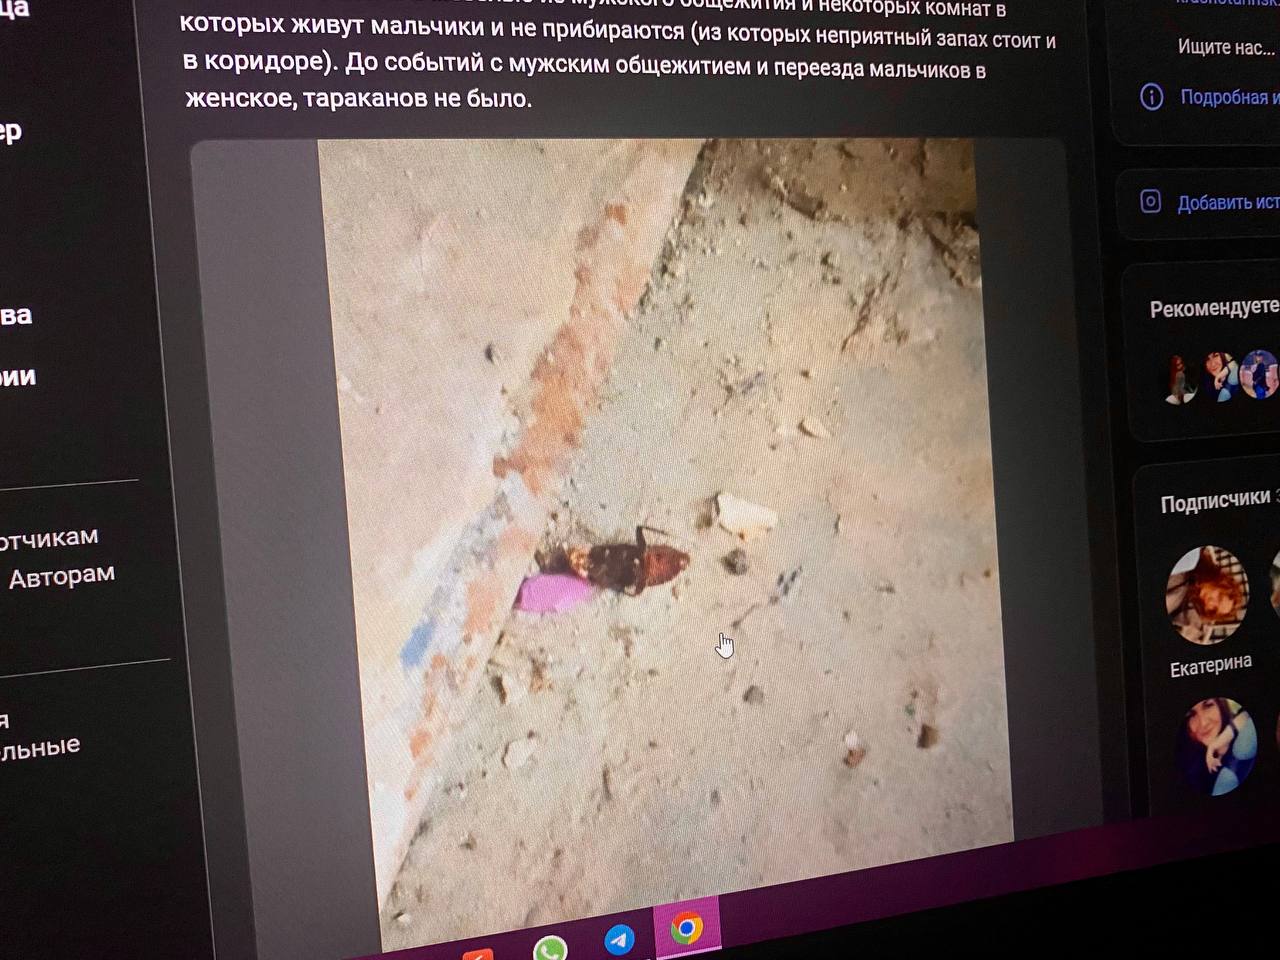 Студентка КИКа пожаловалась на тараканов в женском общежитии